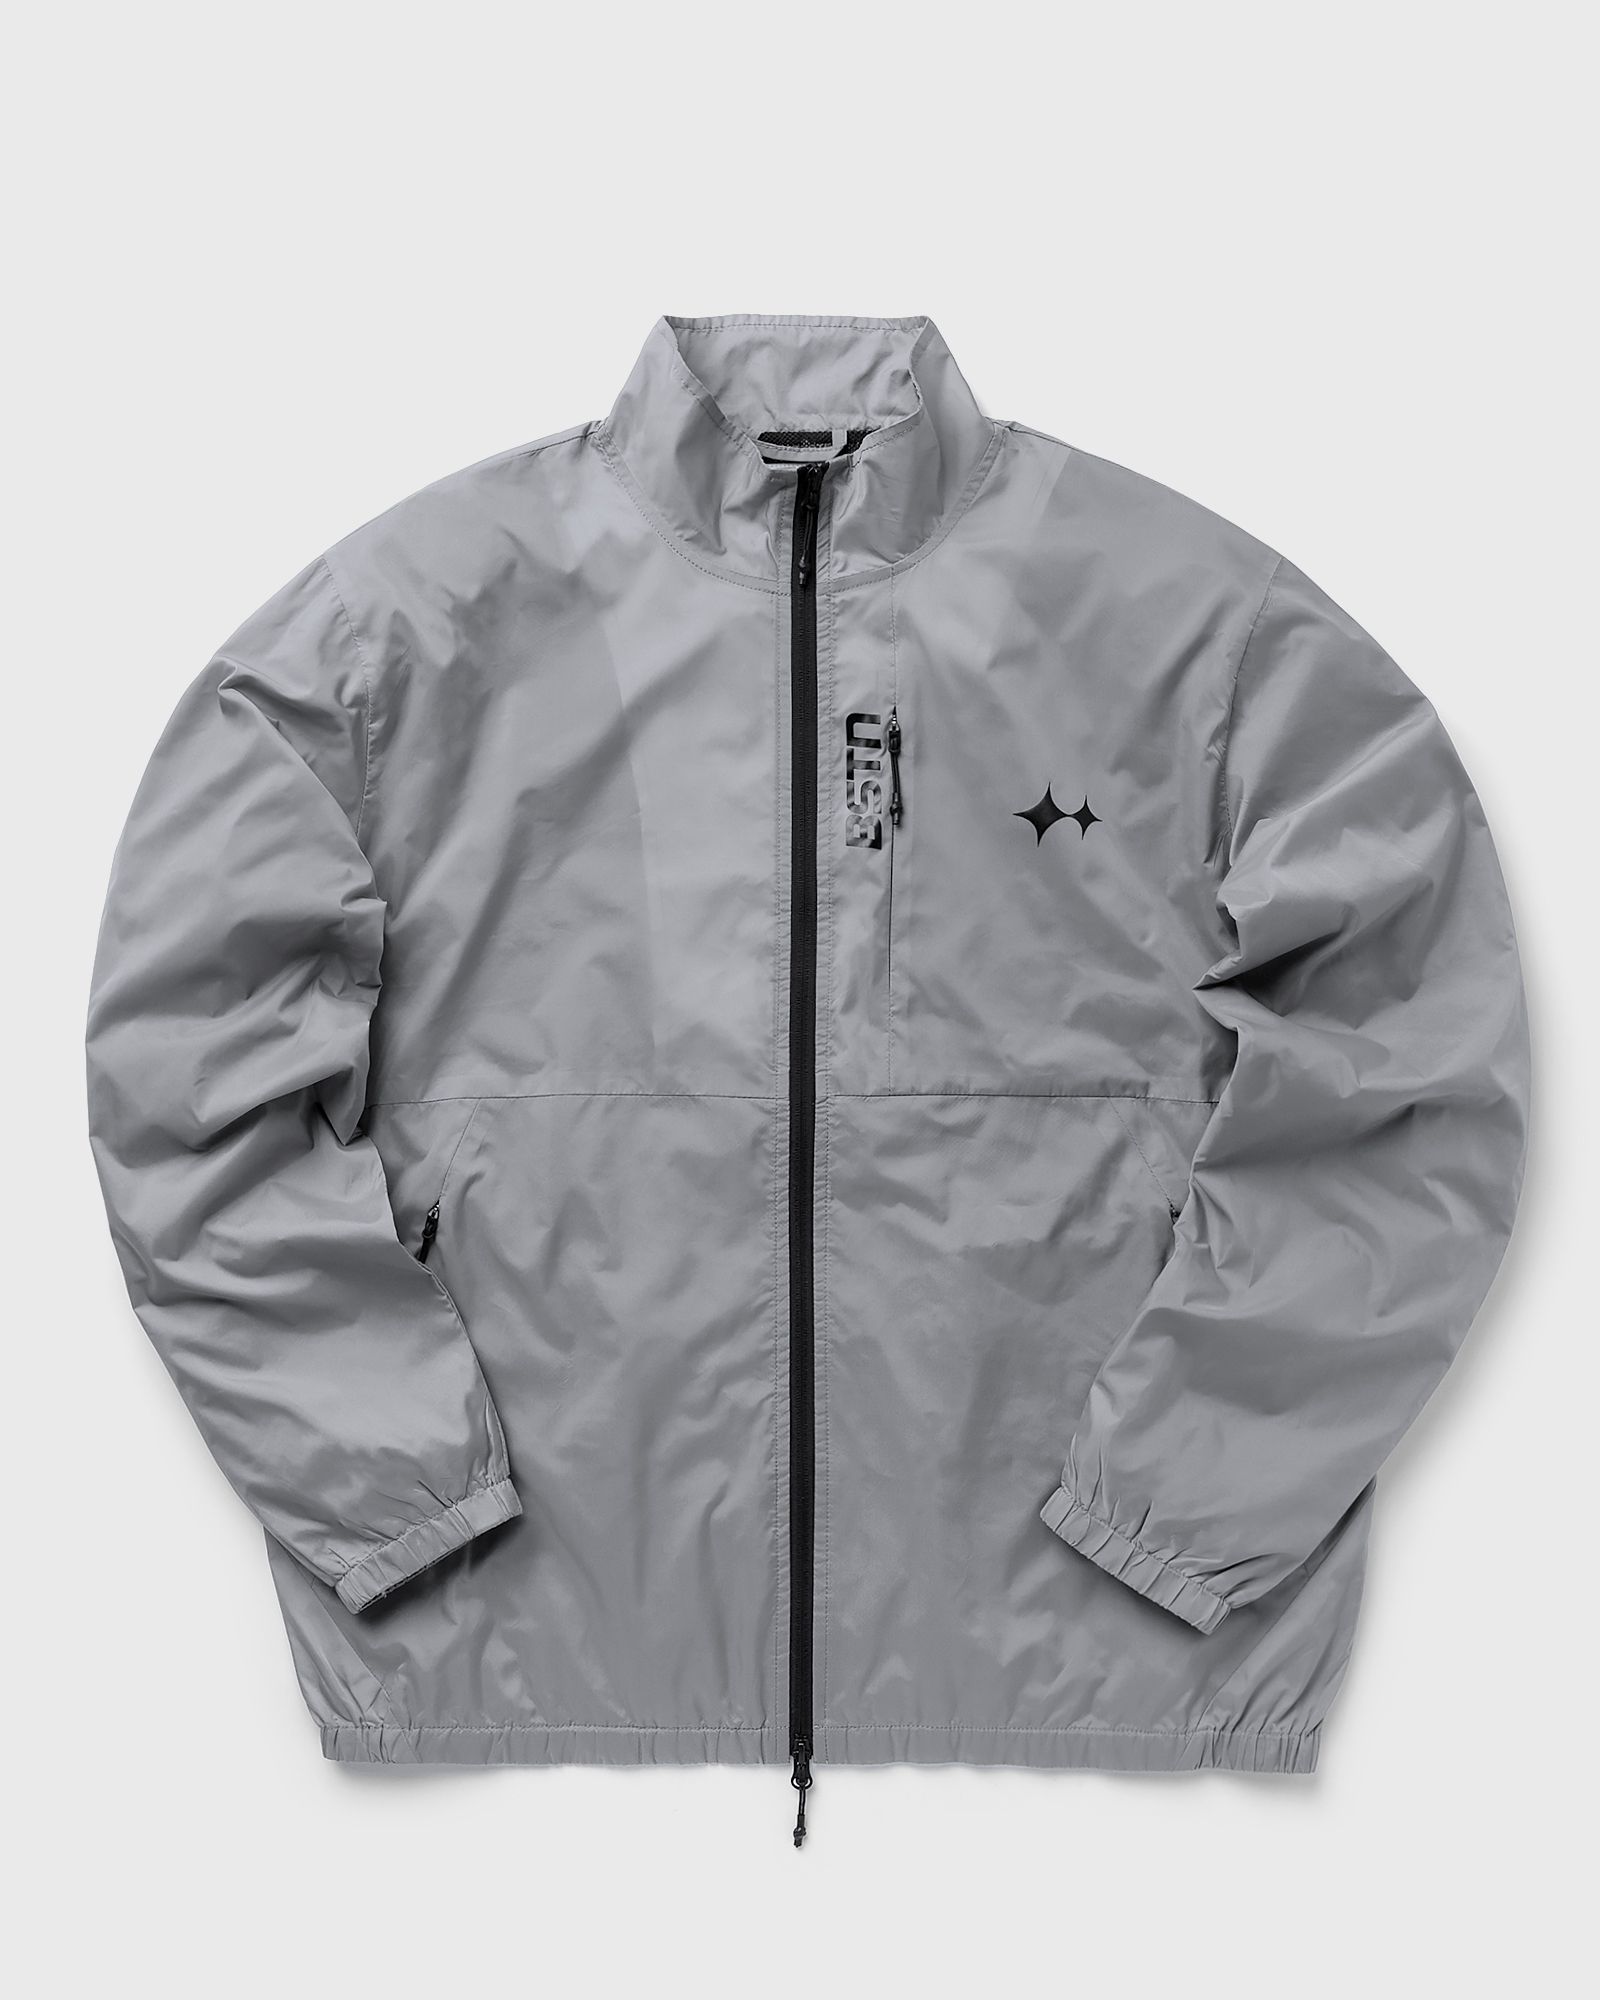 BSTN Brand - track jacket men track jackets grey in größe:xxl